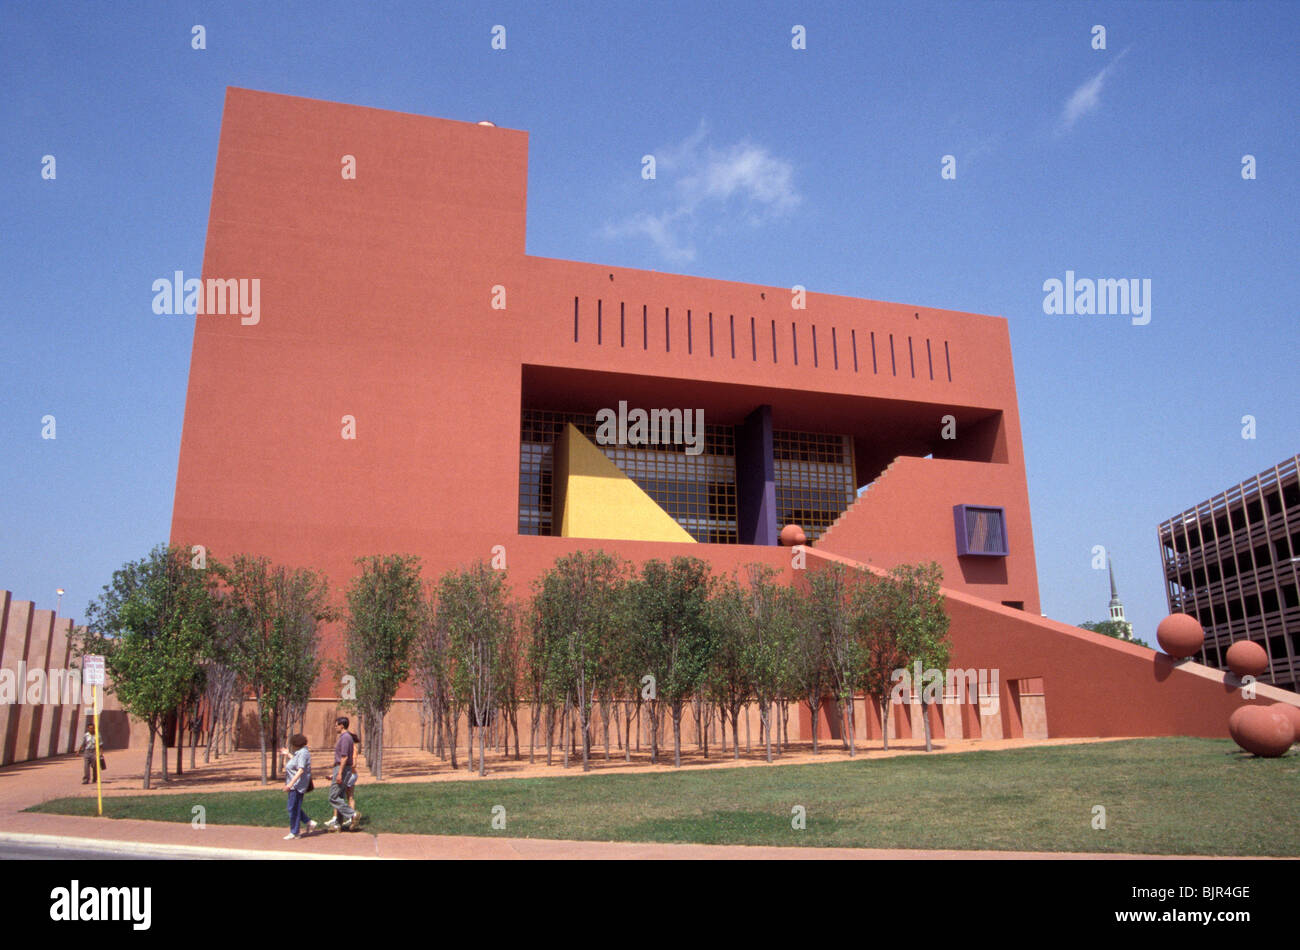 San Antonio Central Library building designed by Mexican architect Ricardo Legorreta, San Antonio, Texas Stock Photo